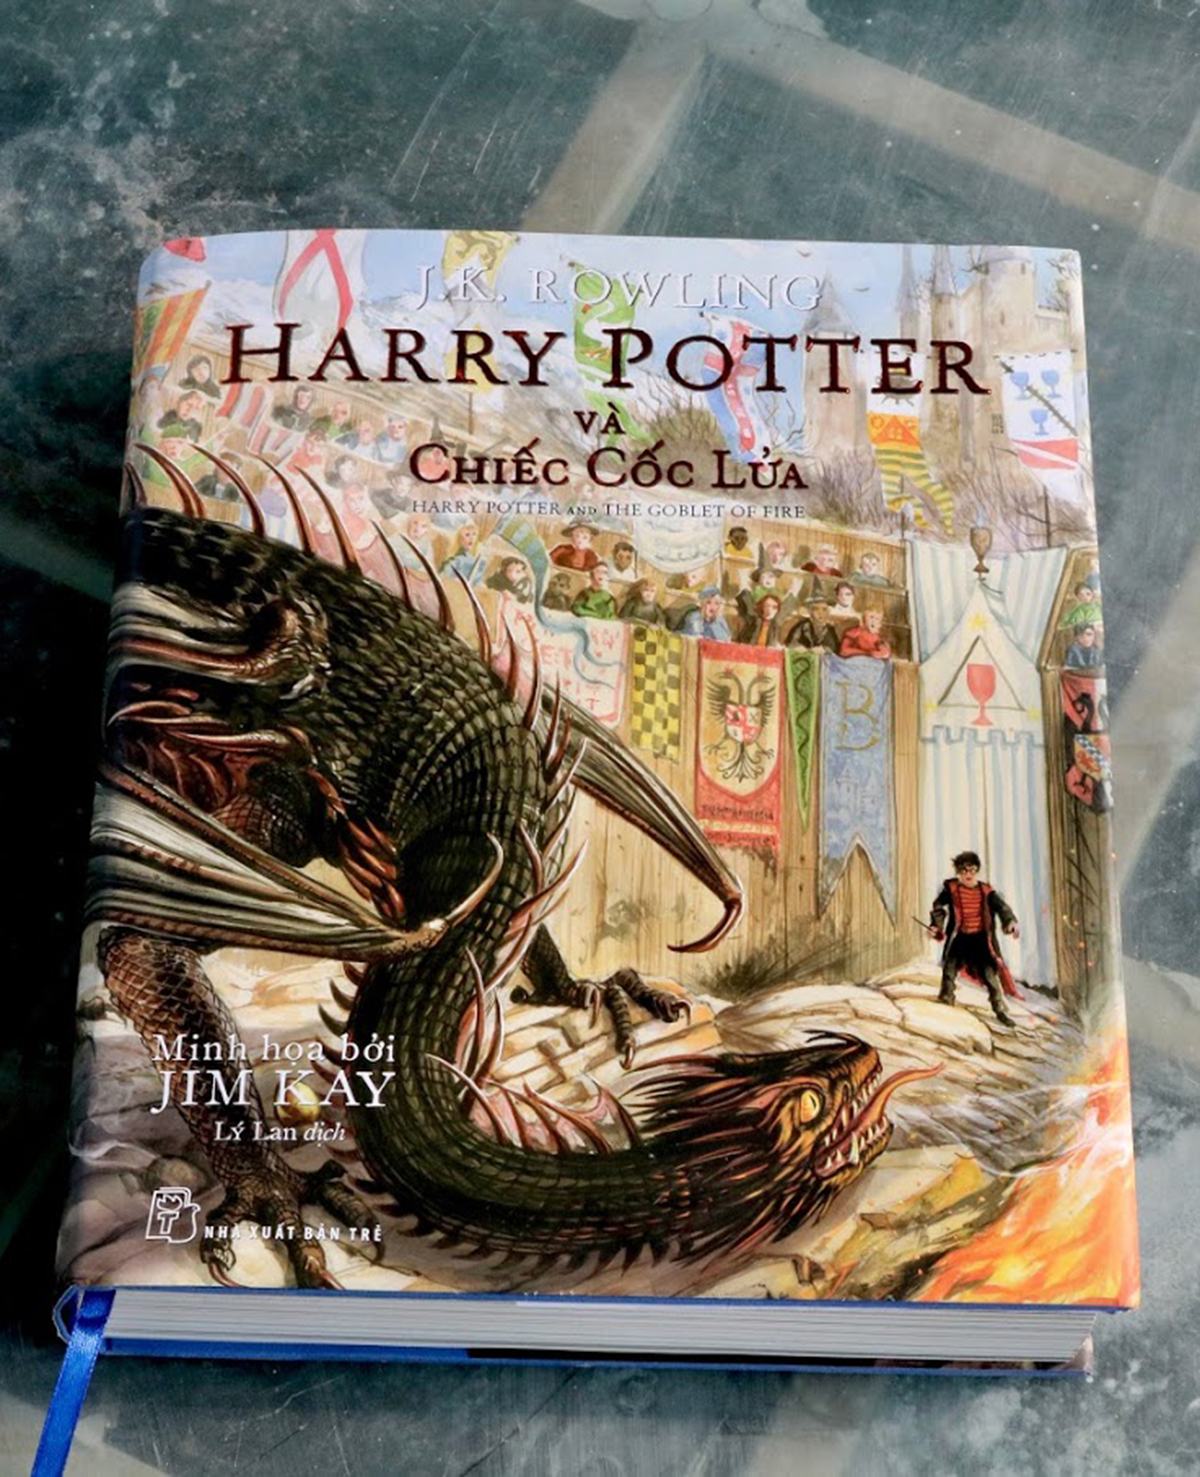 Harry Potter & chiếc Cốc Lửa bản in màu, có tranh minh họa. Năm 2000, bản tiếng Việt tiểu thuyết kinh điển Harry Potter được NXB Trẻ phát hàn, dịch giả Lý Lan chuyển ngữ. Ảnh: NXB Trẻ.